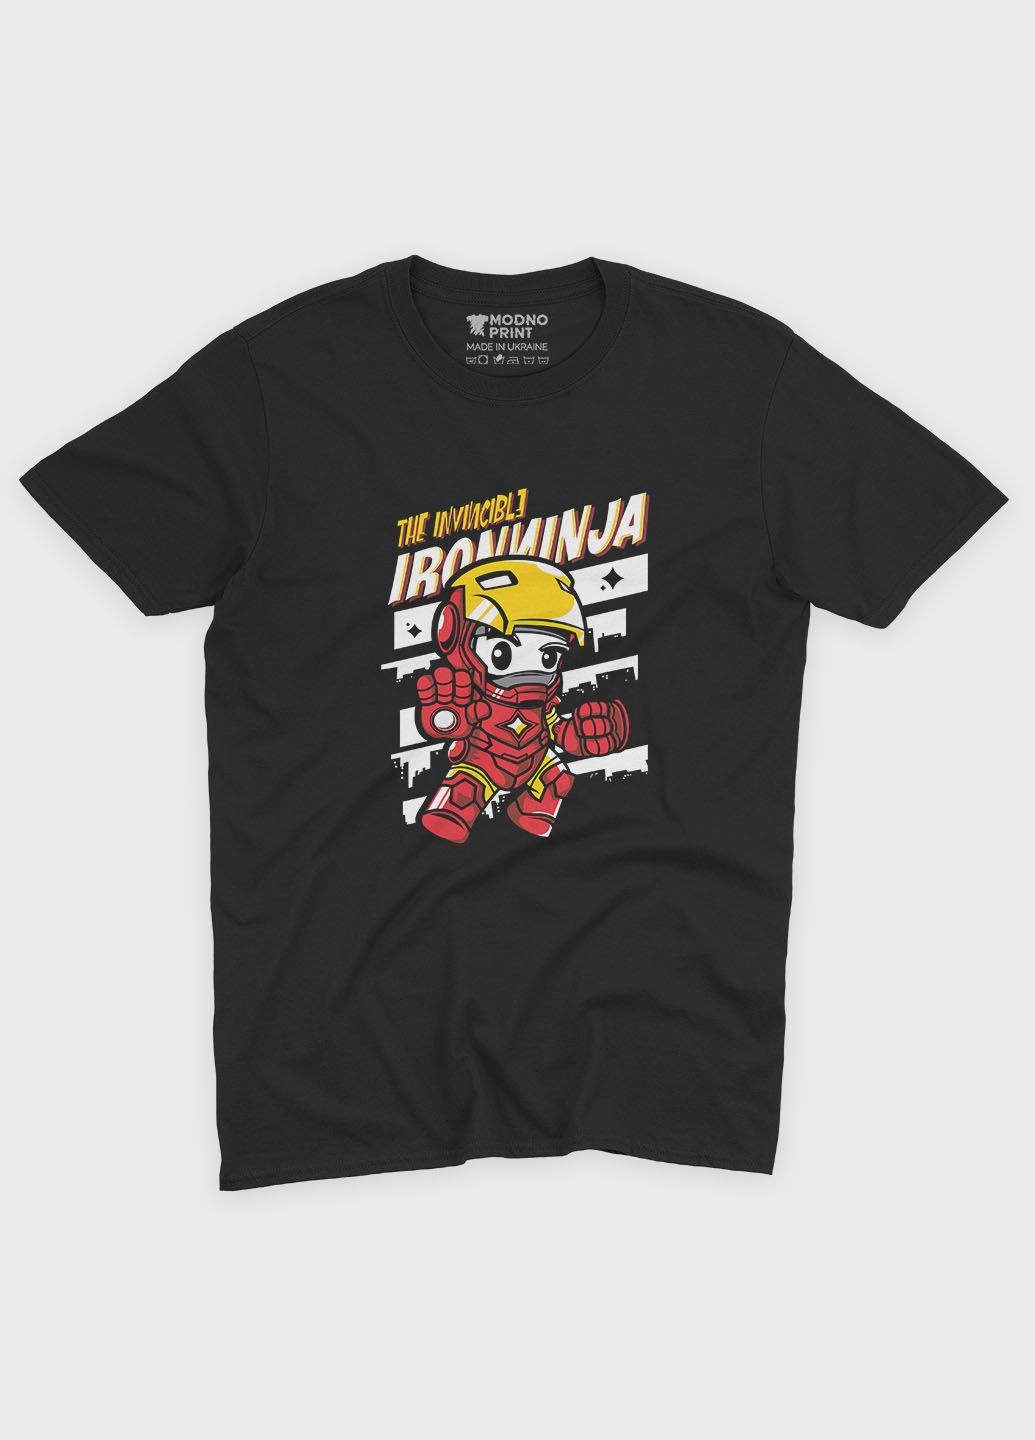 Черная мужская футболка с принтом супергероя - железный человек (ts001-1-bl-006-016-009) Modno